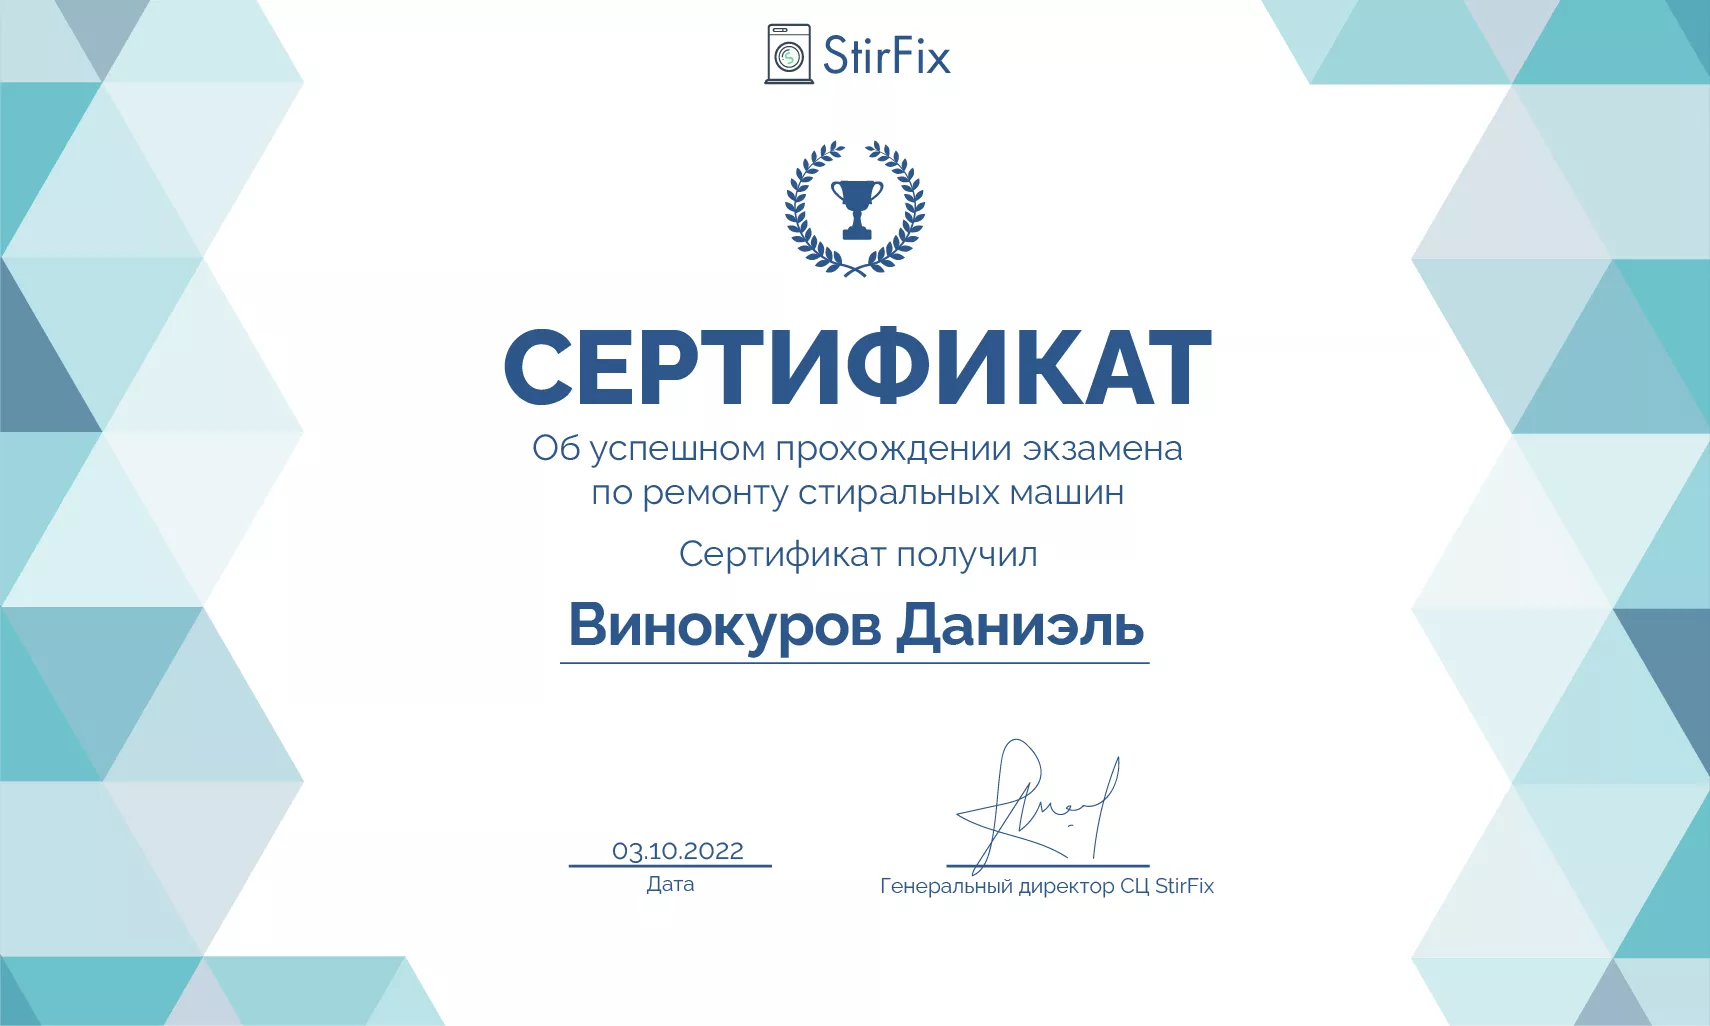 Винокуров Даниэль сертификат мастера по ремонту стиральных машин